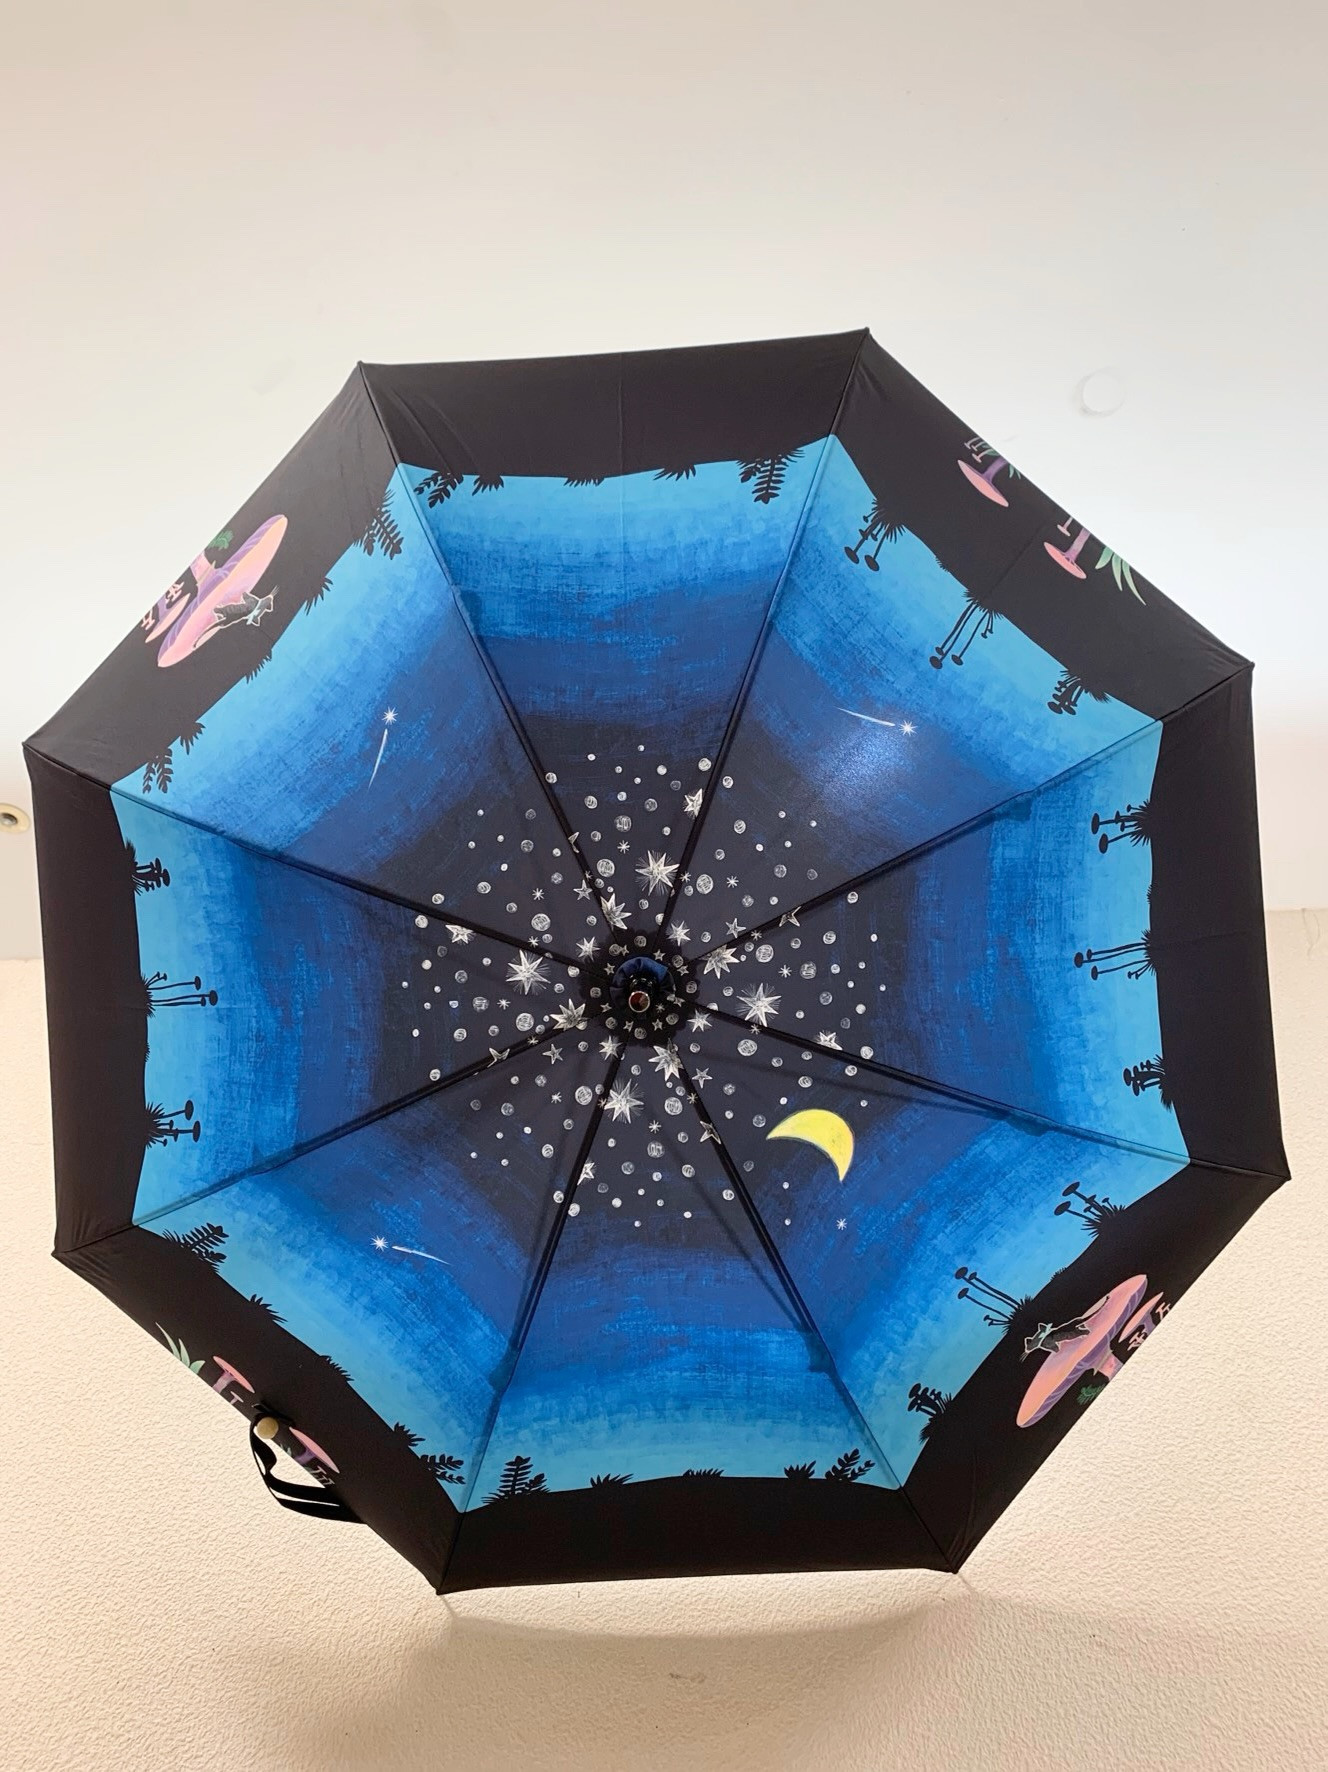 着物傘をはじめ自慢のデザインの傘を画像でご覧いただけます